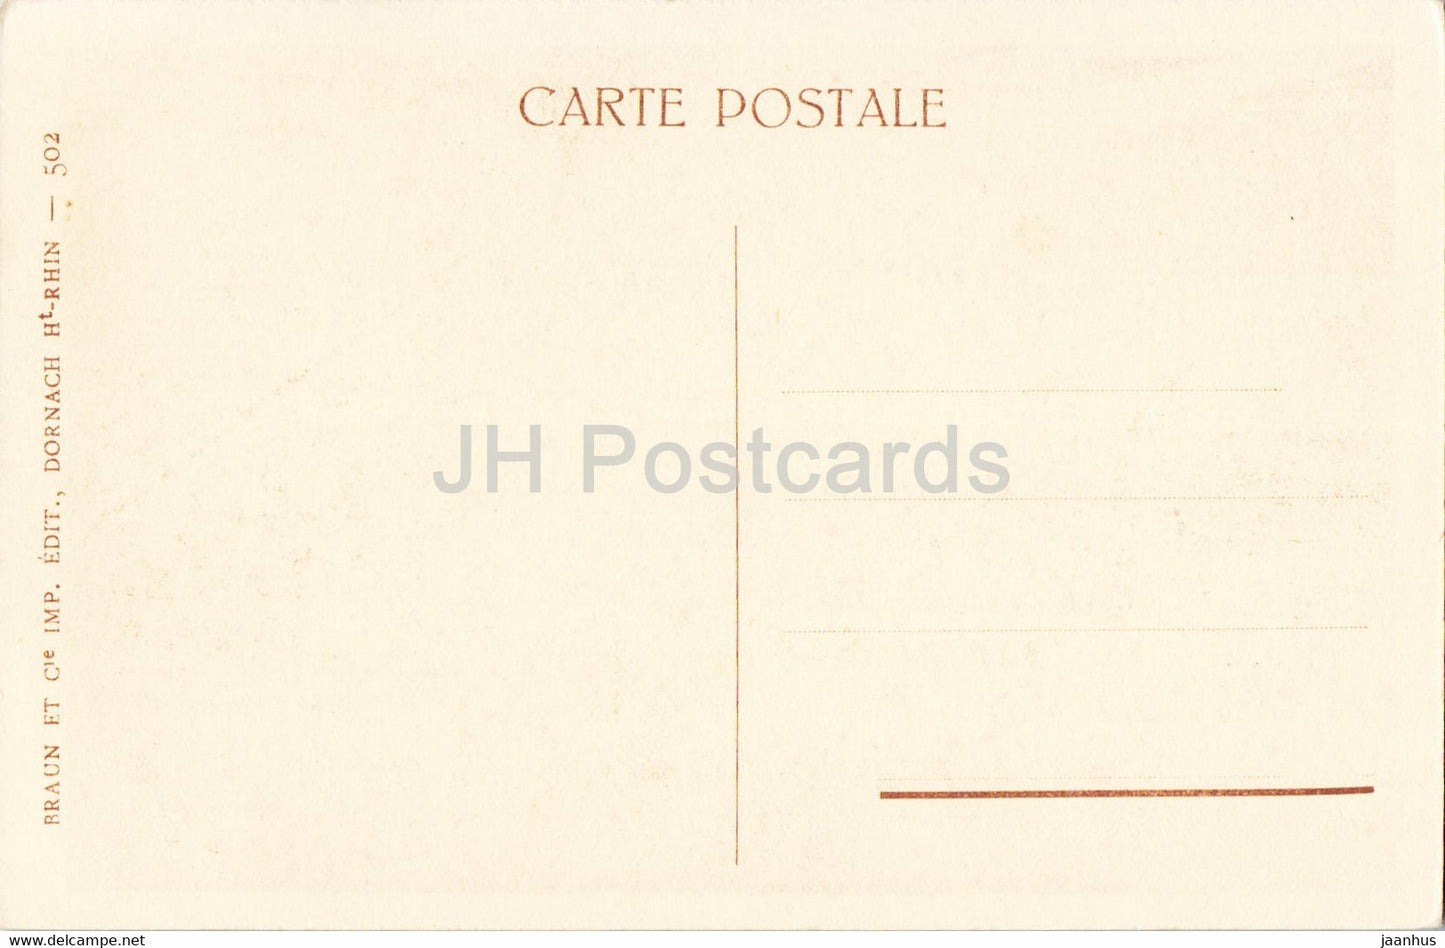 Riquewihr - Le Dolder - carte postale ancienne - France - inutilisée